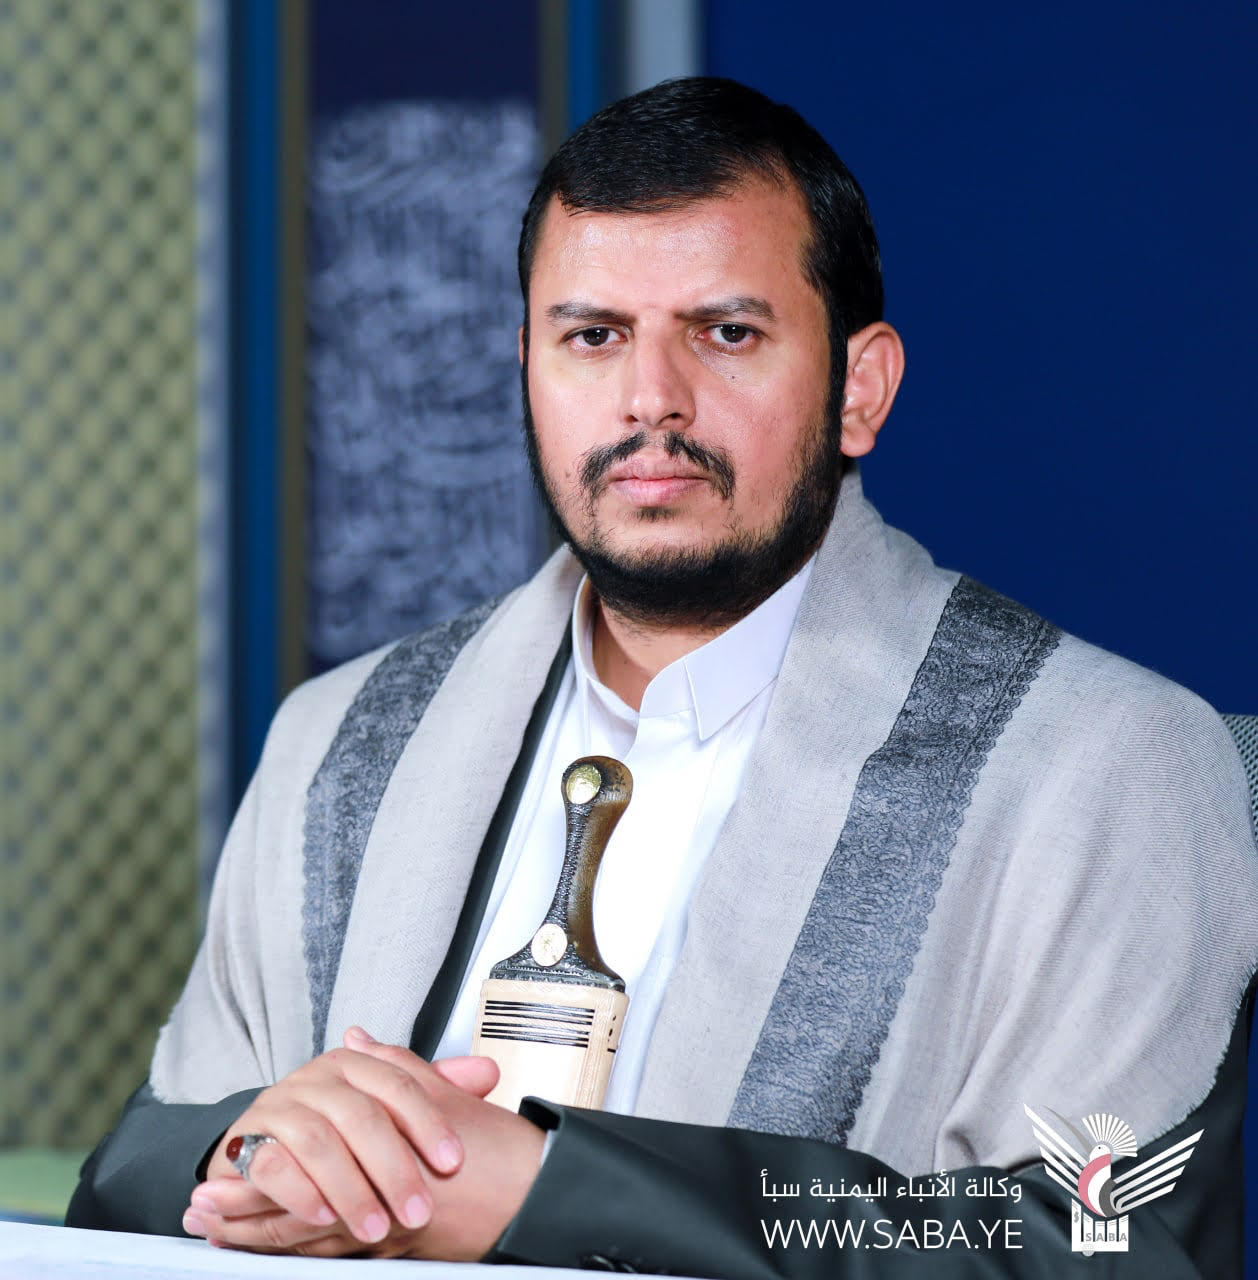 Le chef de la révolution félicite le peuple yéménite et la nation islamique à l'occasion du Ramadan